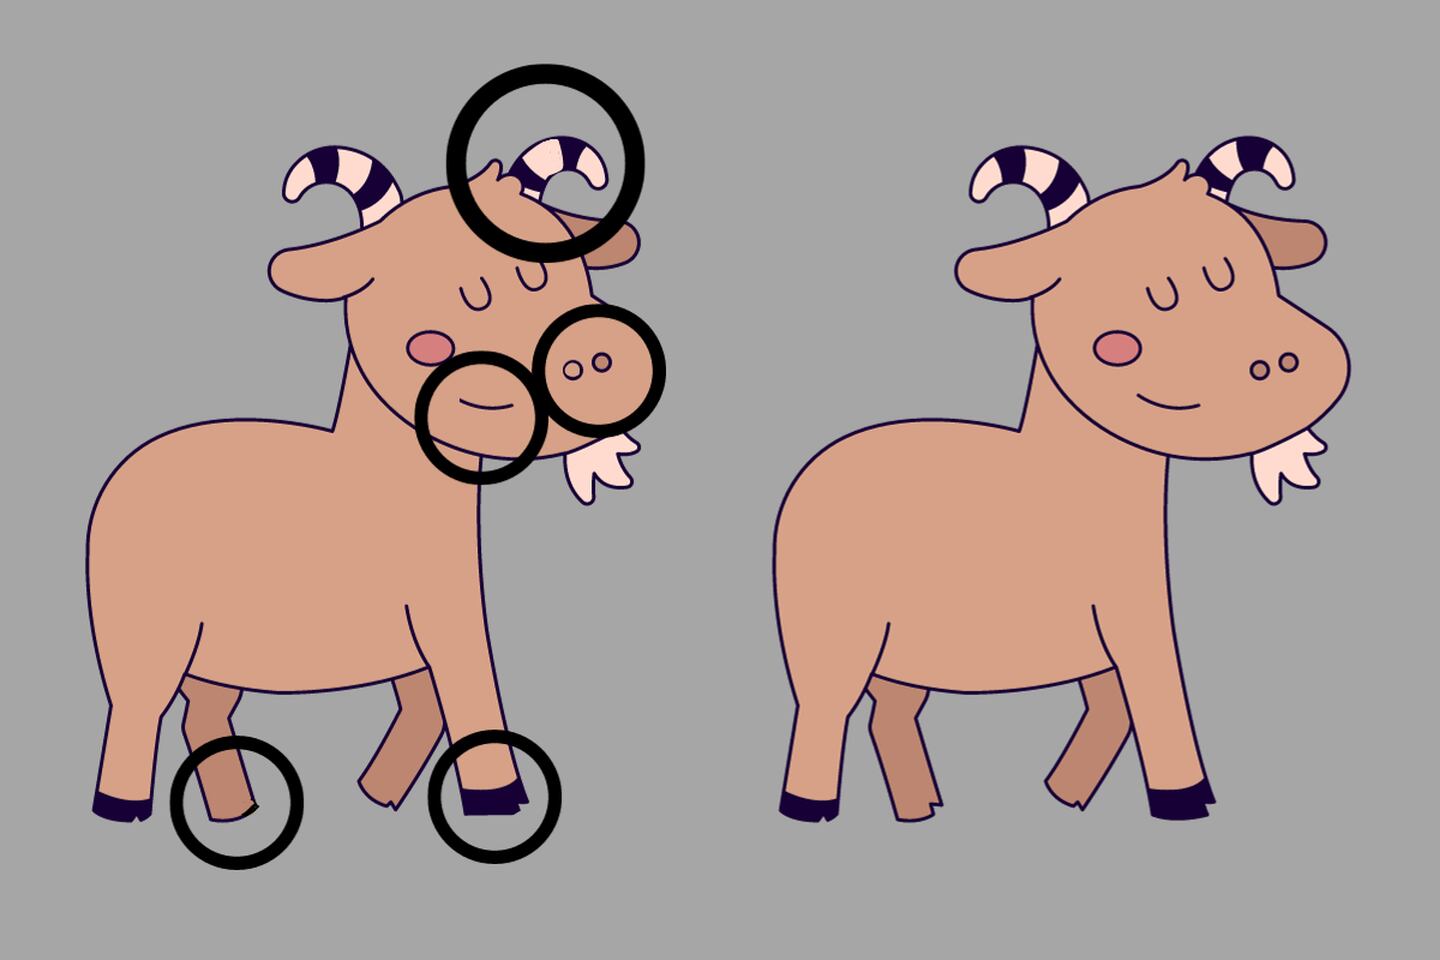 Dos dibujos de cabras que parecen iguales, pero tienen cinco diferencias entre ellas, que están destacadas con círculos negros.